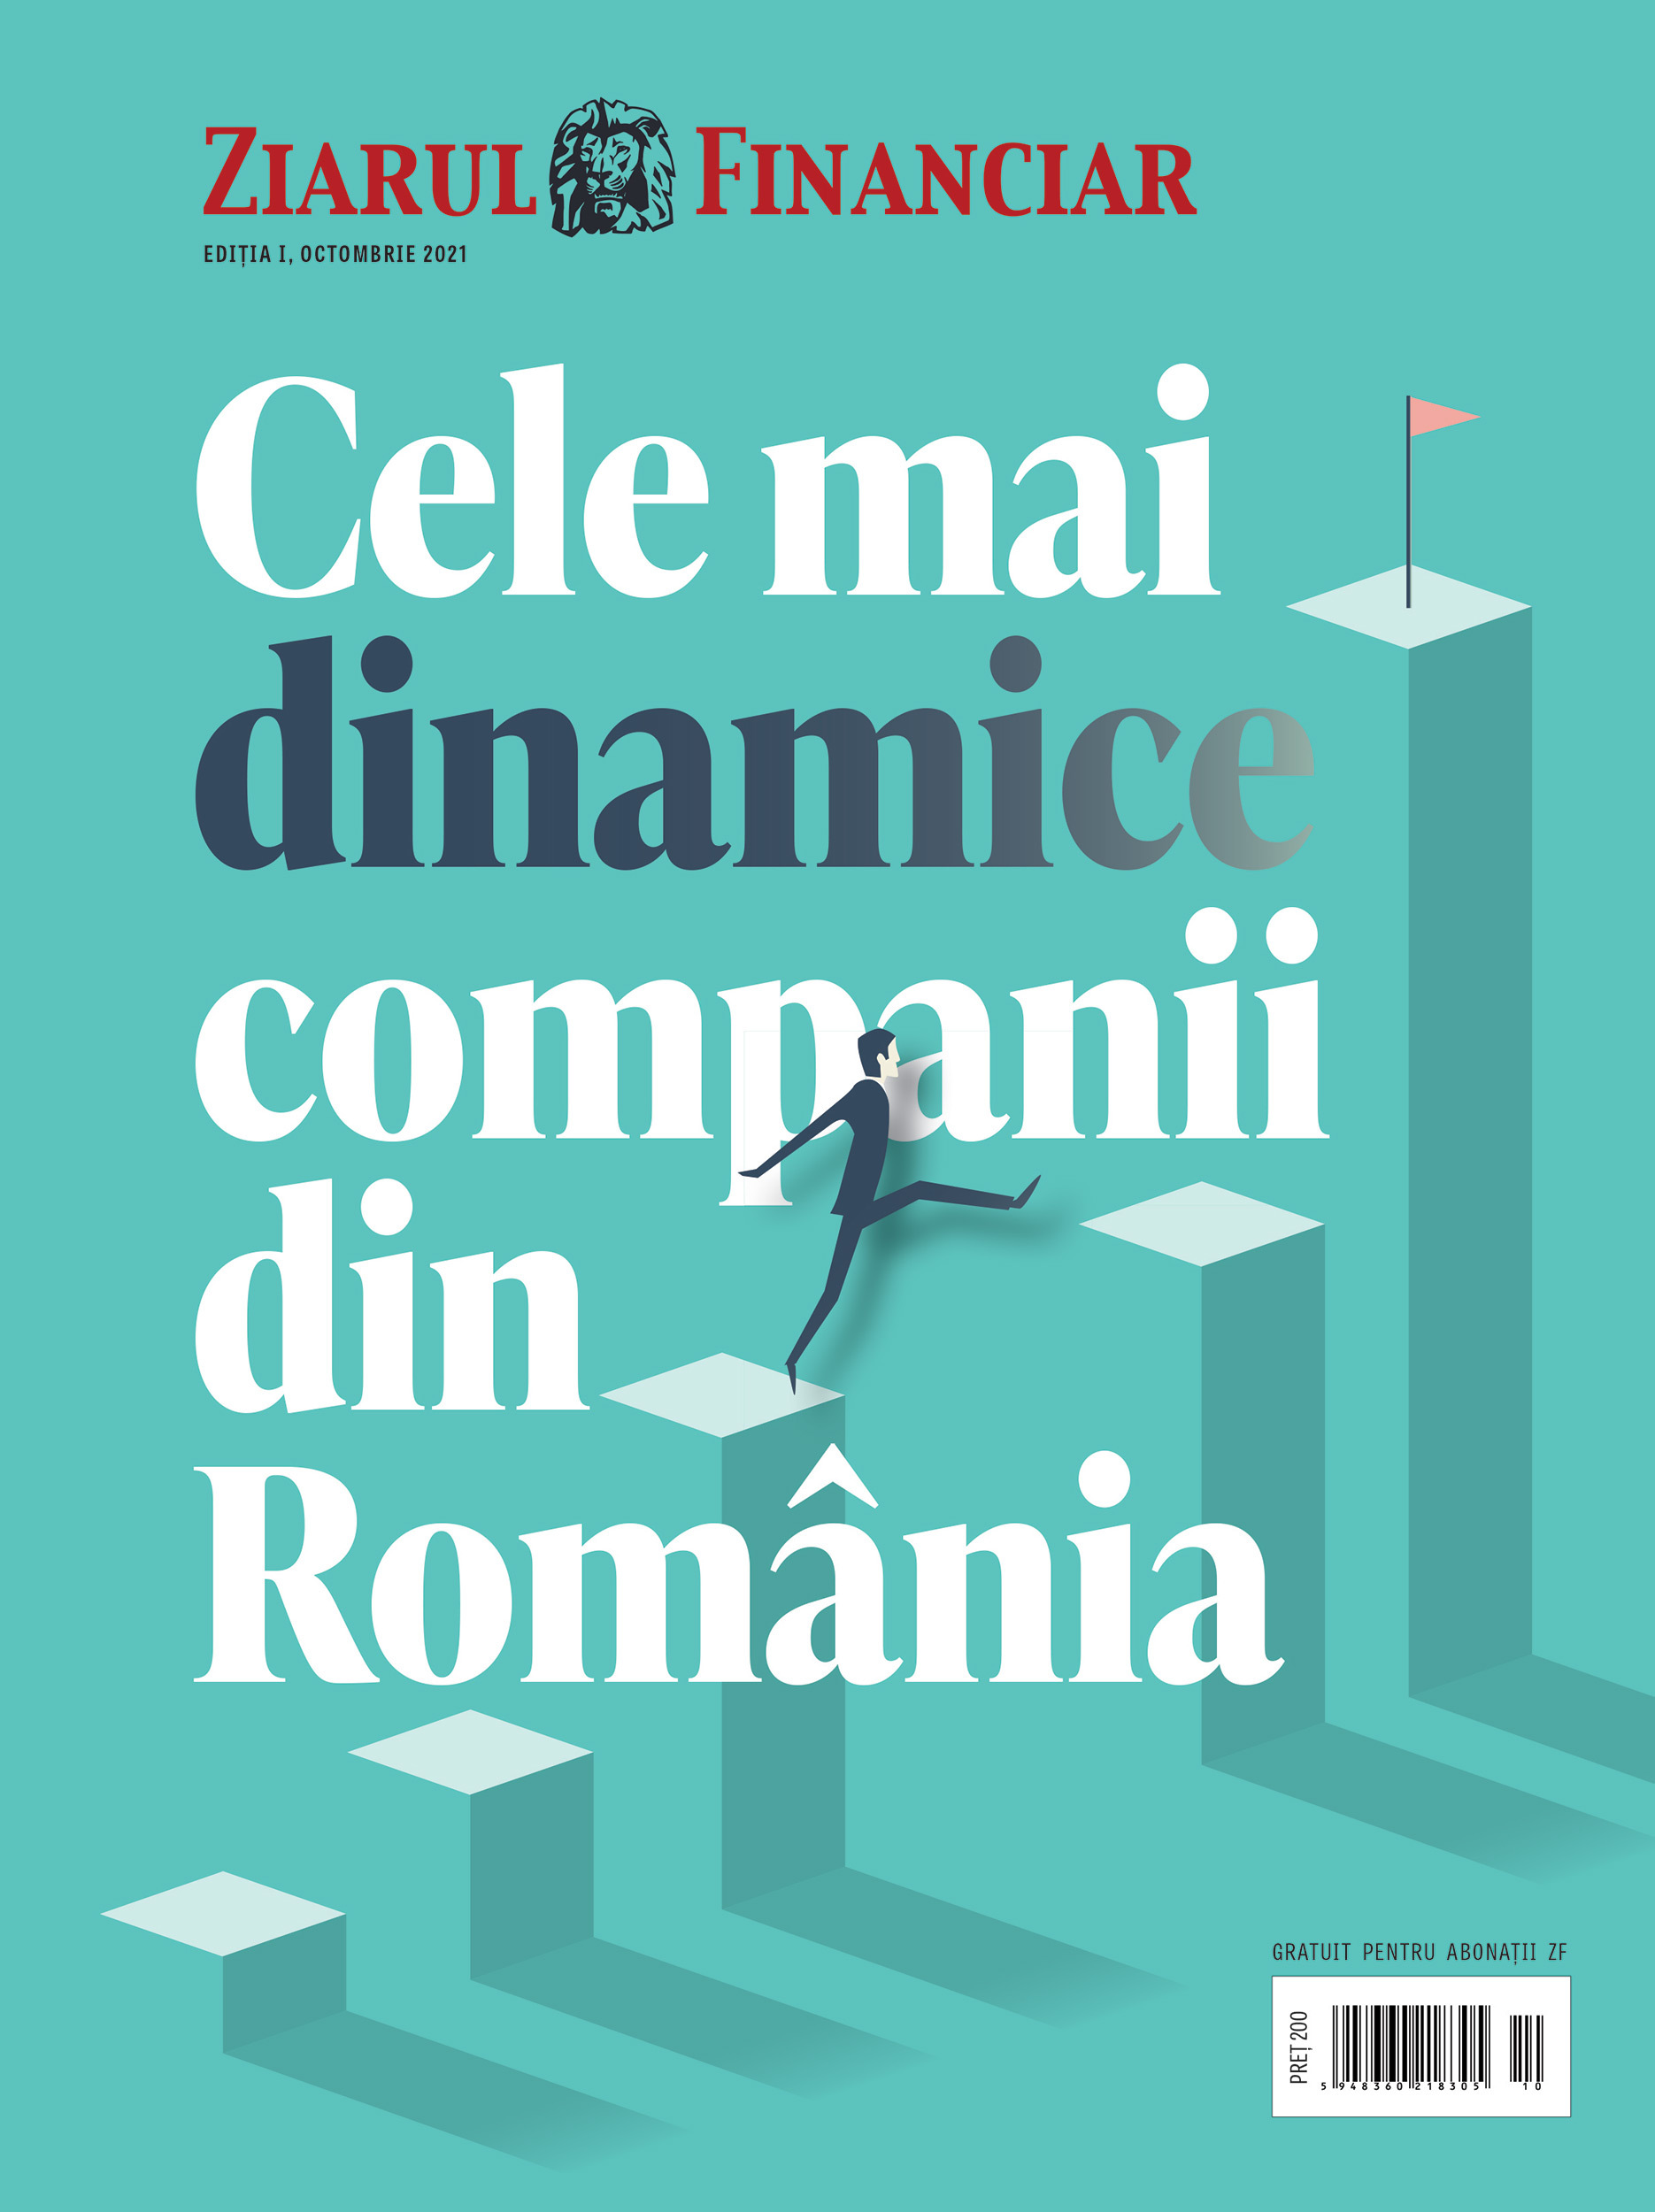 Urmează anuarul ZF Cele mai dinamice companii din România – prima ediţie. Ziarul Financiar vă propune un nou proiect editorial – Cele mai dinamice companii din România – un produs care îi aduce în prim-plan pe învingătorii crizei generate de pandemia de COVID-19